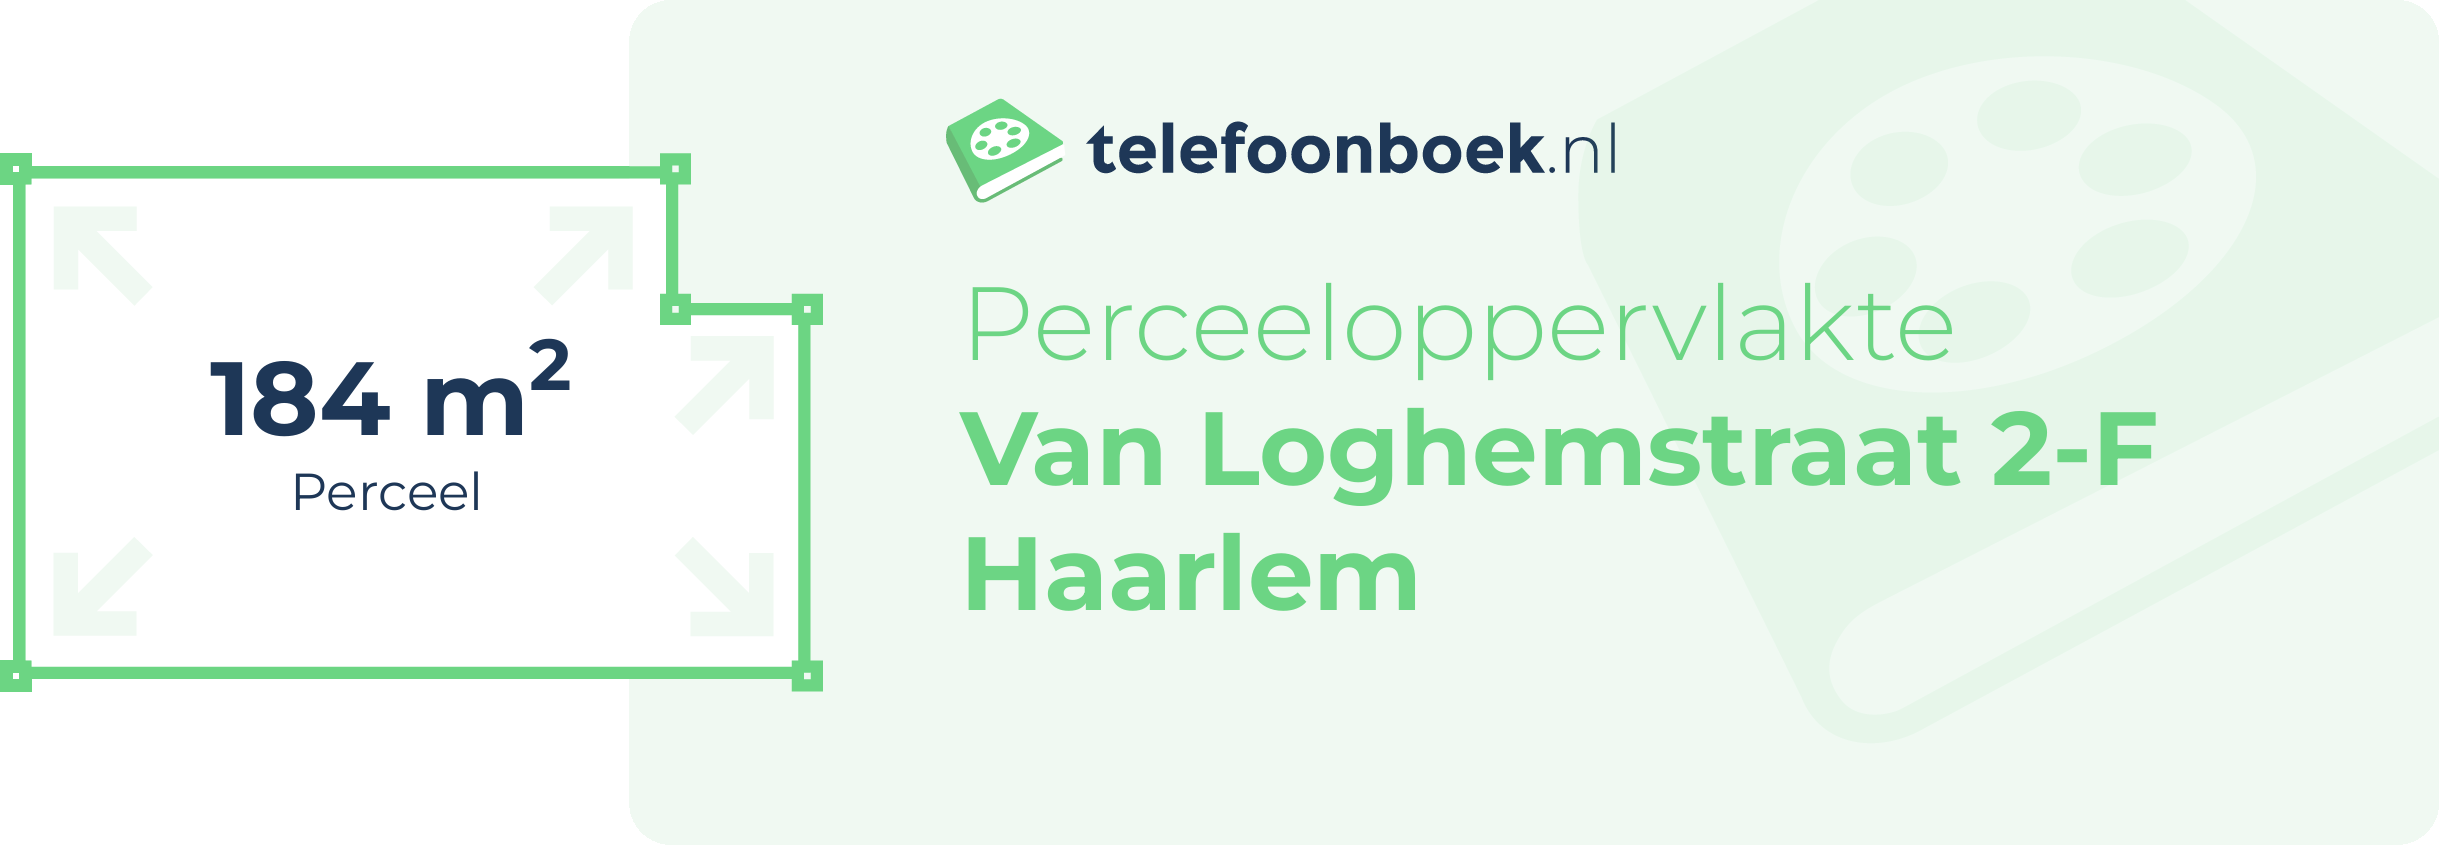 Perceeloppervlakte Van Loghemstraat 2-F Haarlem